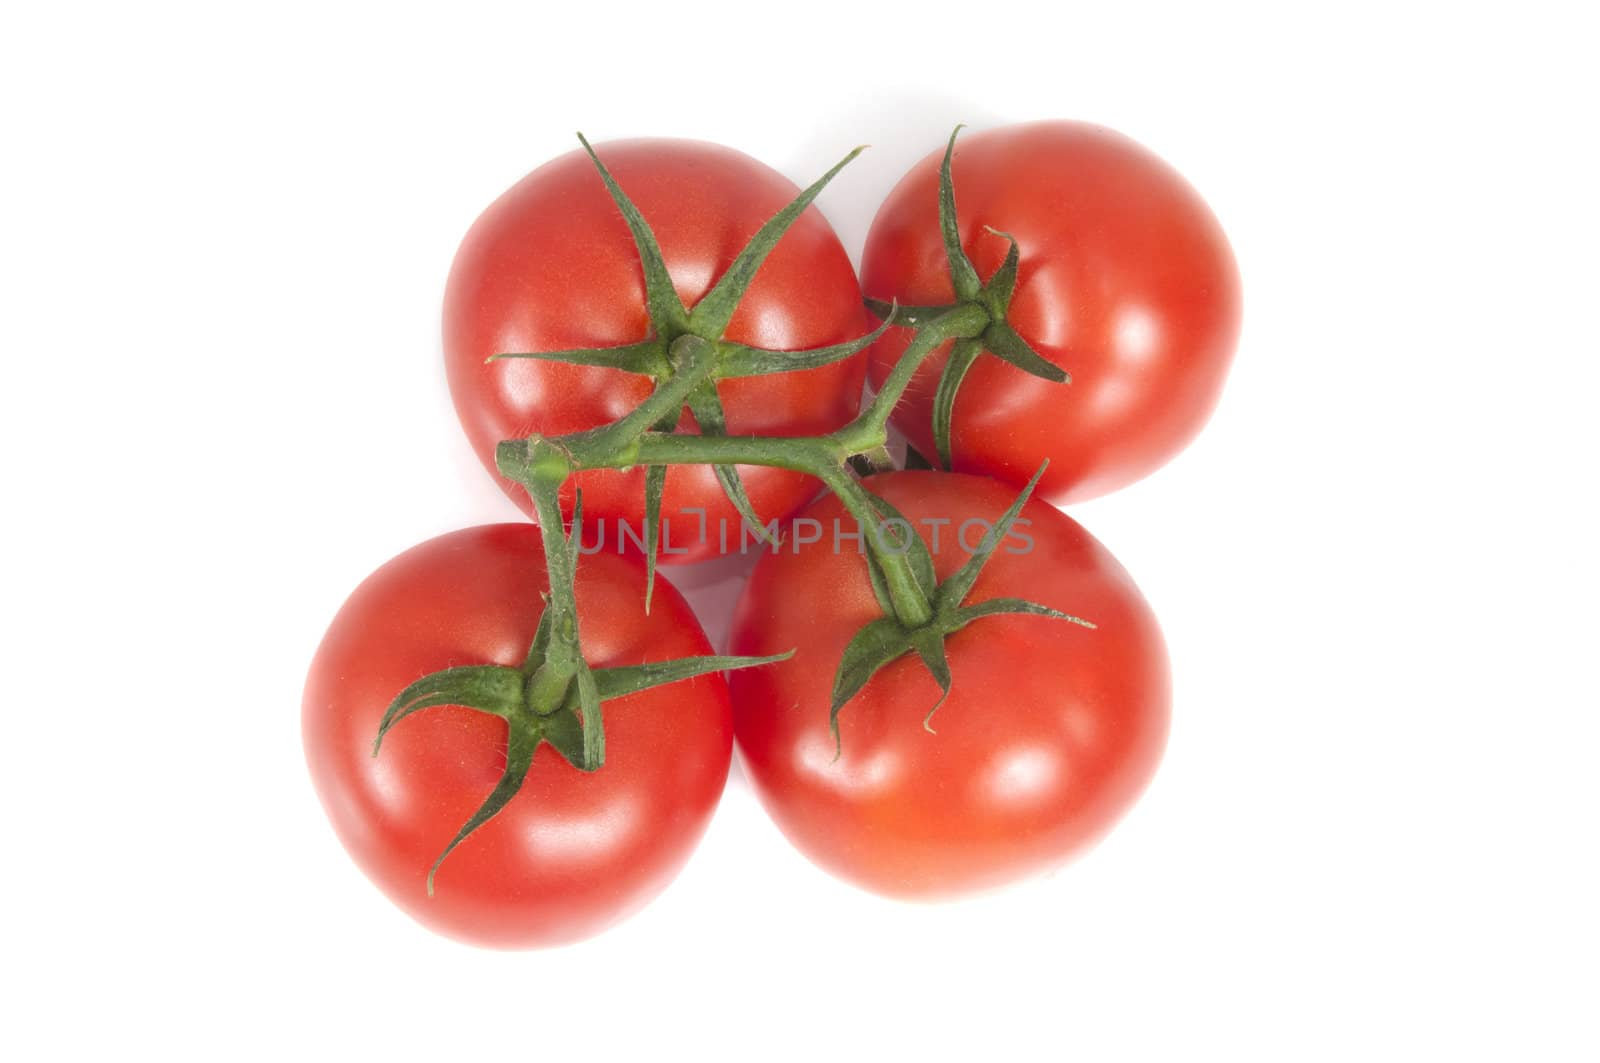 Four Tomatoes by Gordo25